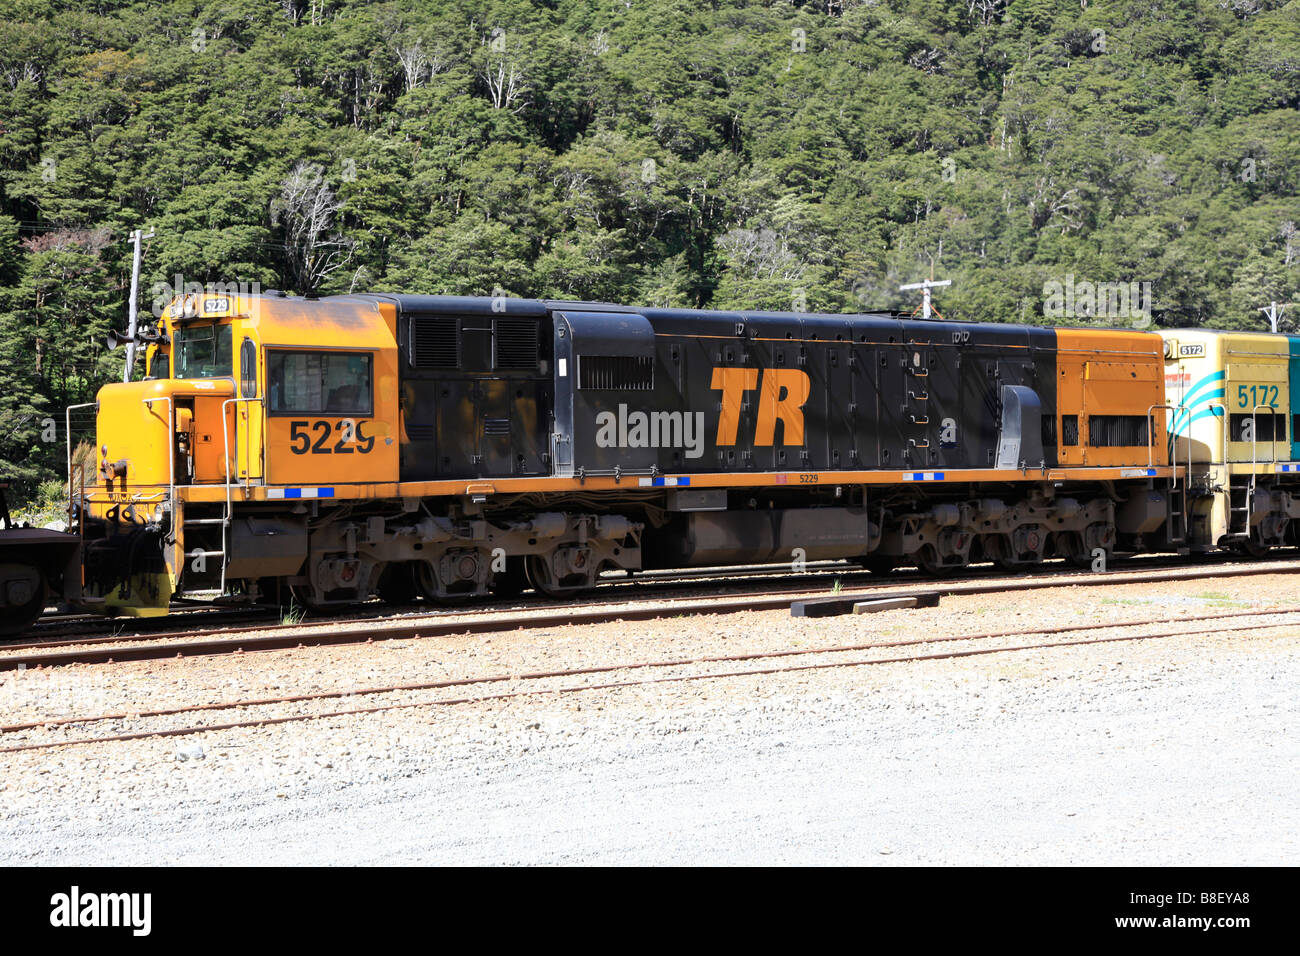 Moteur diesel NZ charbon locomotive train, Arthurs Pass, Canterbury, île du Sud, Nouvelle-Zélande Banque D'Images